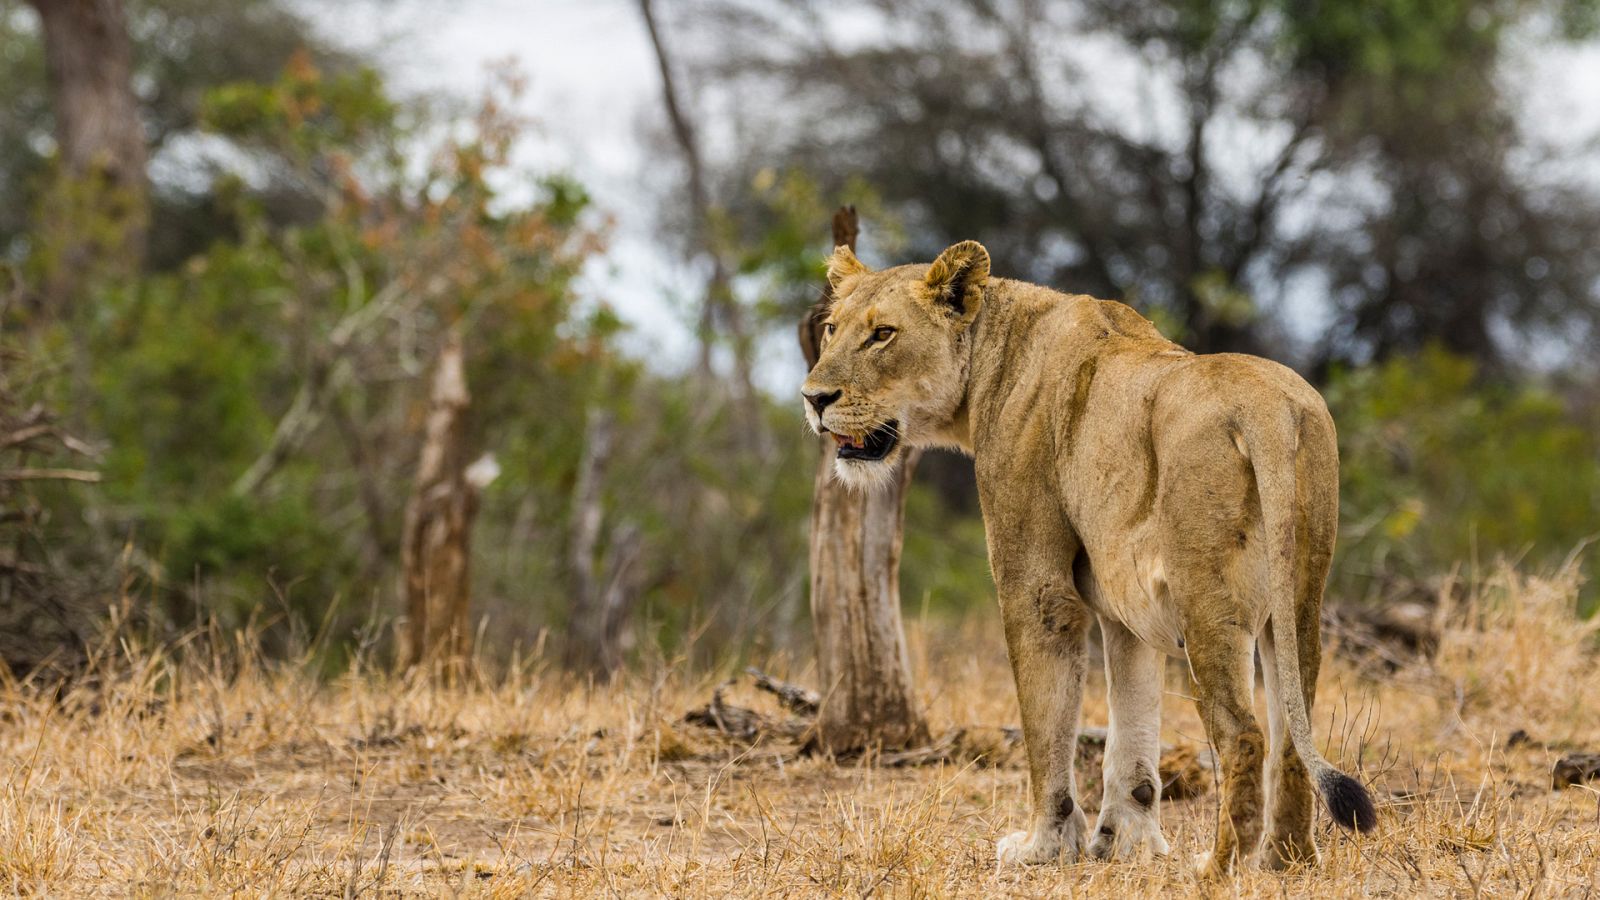 La vida en el África ardiente - Episodio 1: Los leones de la sabana más seca - ver ahora